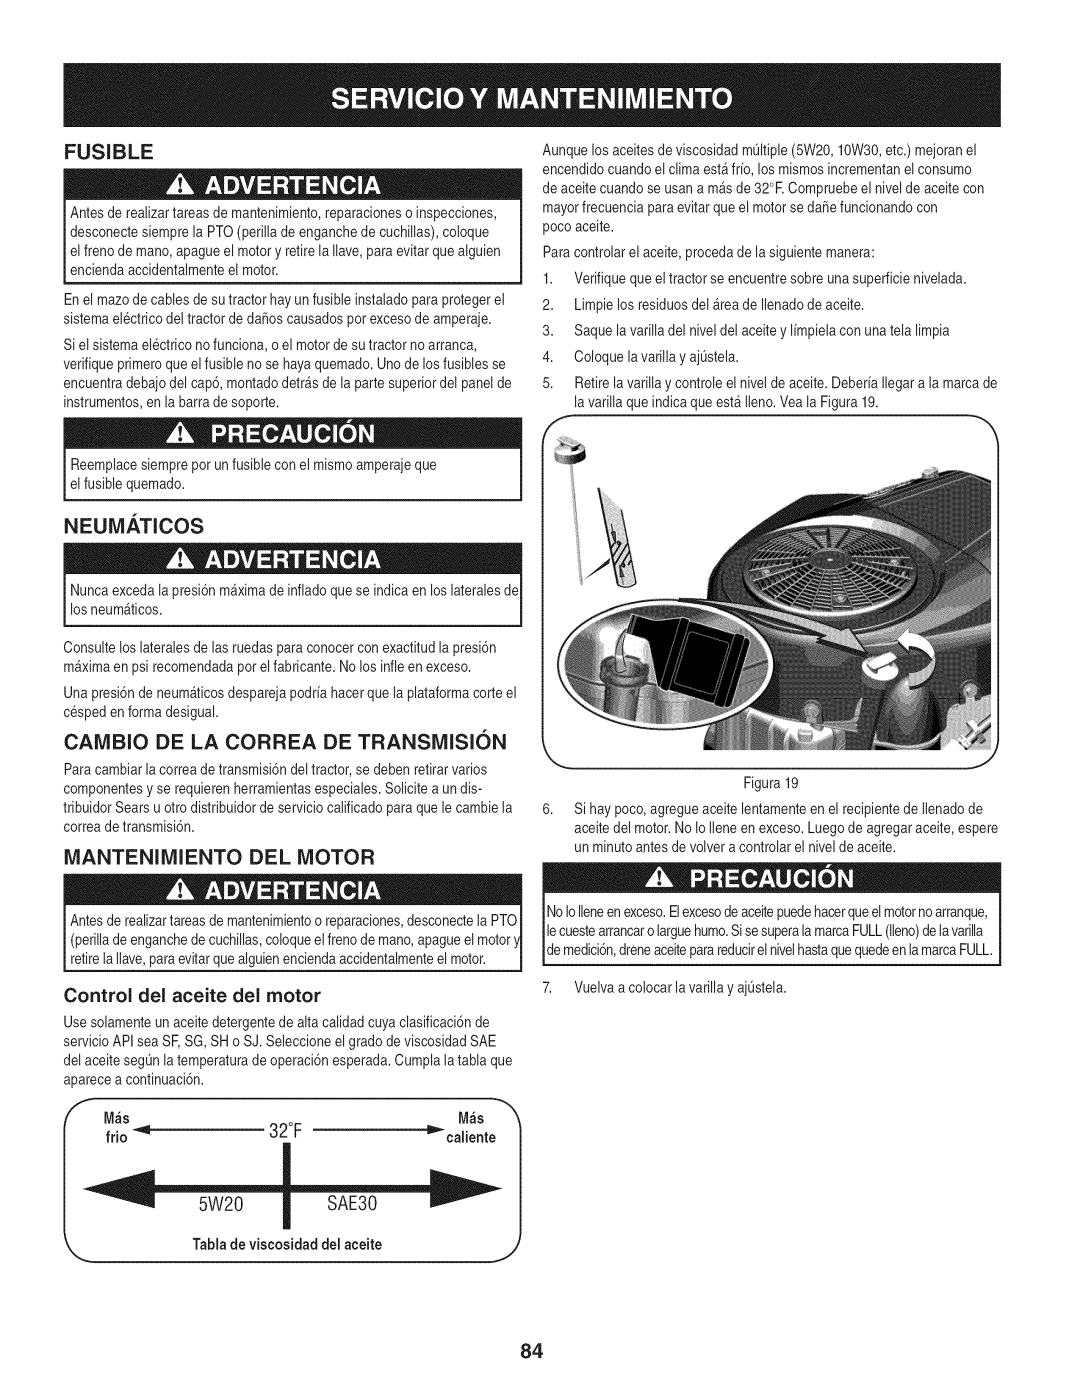 Craftsman PYT 9000, 247.28672 manual Fusible, Neumaticos, Cambio De La Correa De Transmision, Mantenimiento Del Motor 